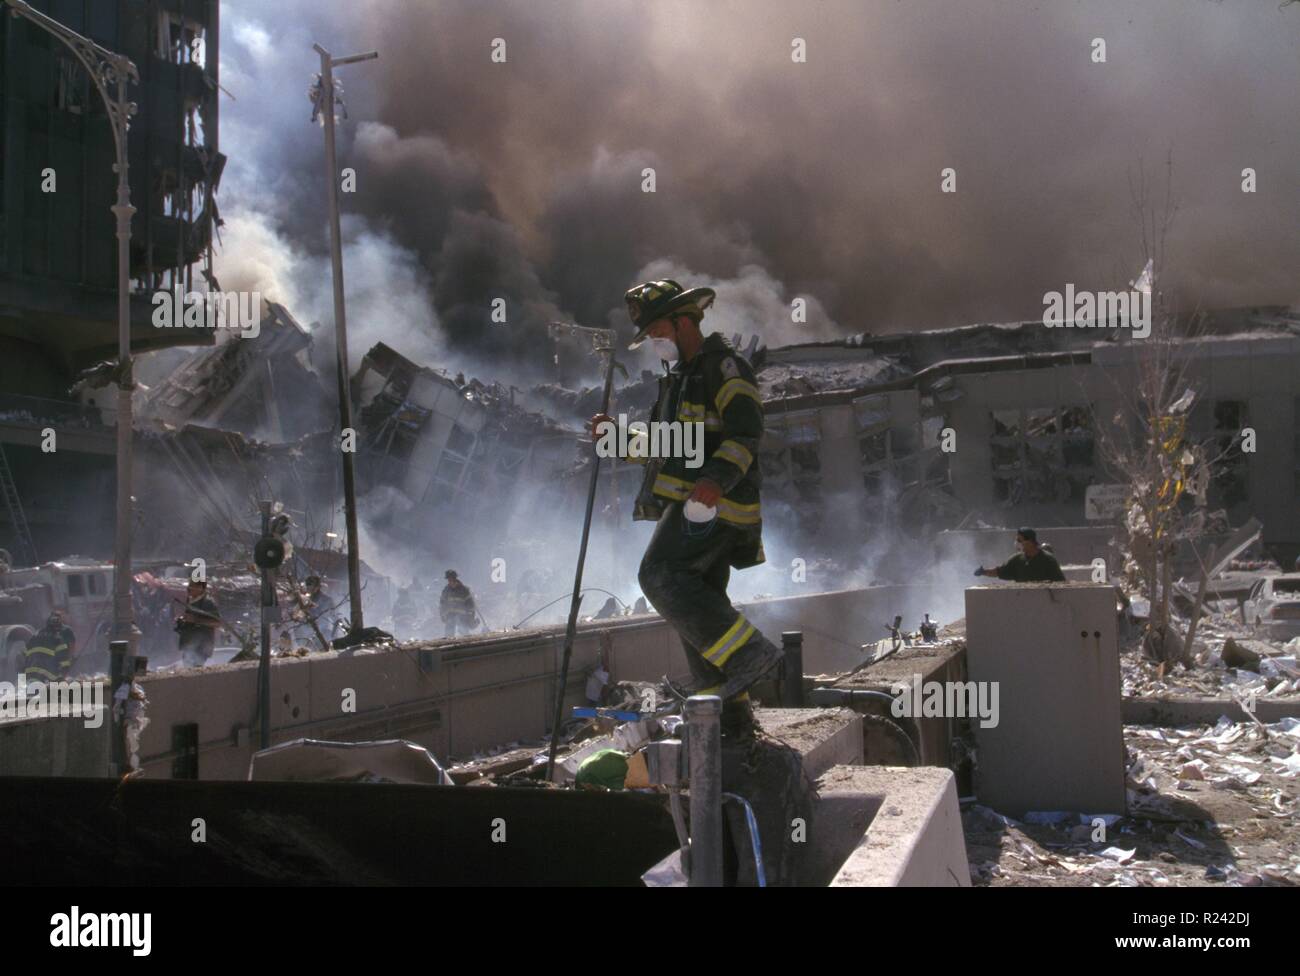 Fotografia a colori di New York i vigili del fuoco in mezzo alle macerie del World Trade Center a seguito degli attacchi dell'11 settembre. Datato 2001 Foto Stock